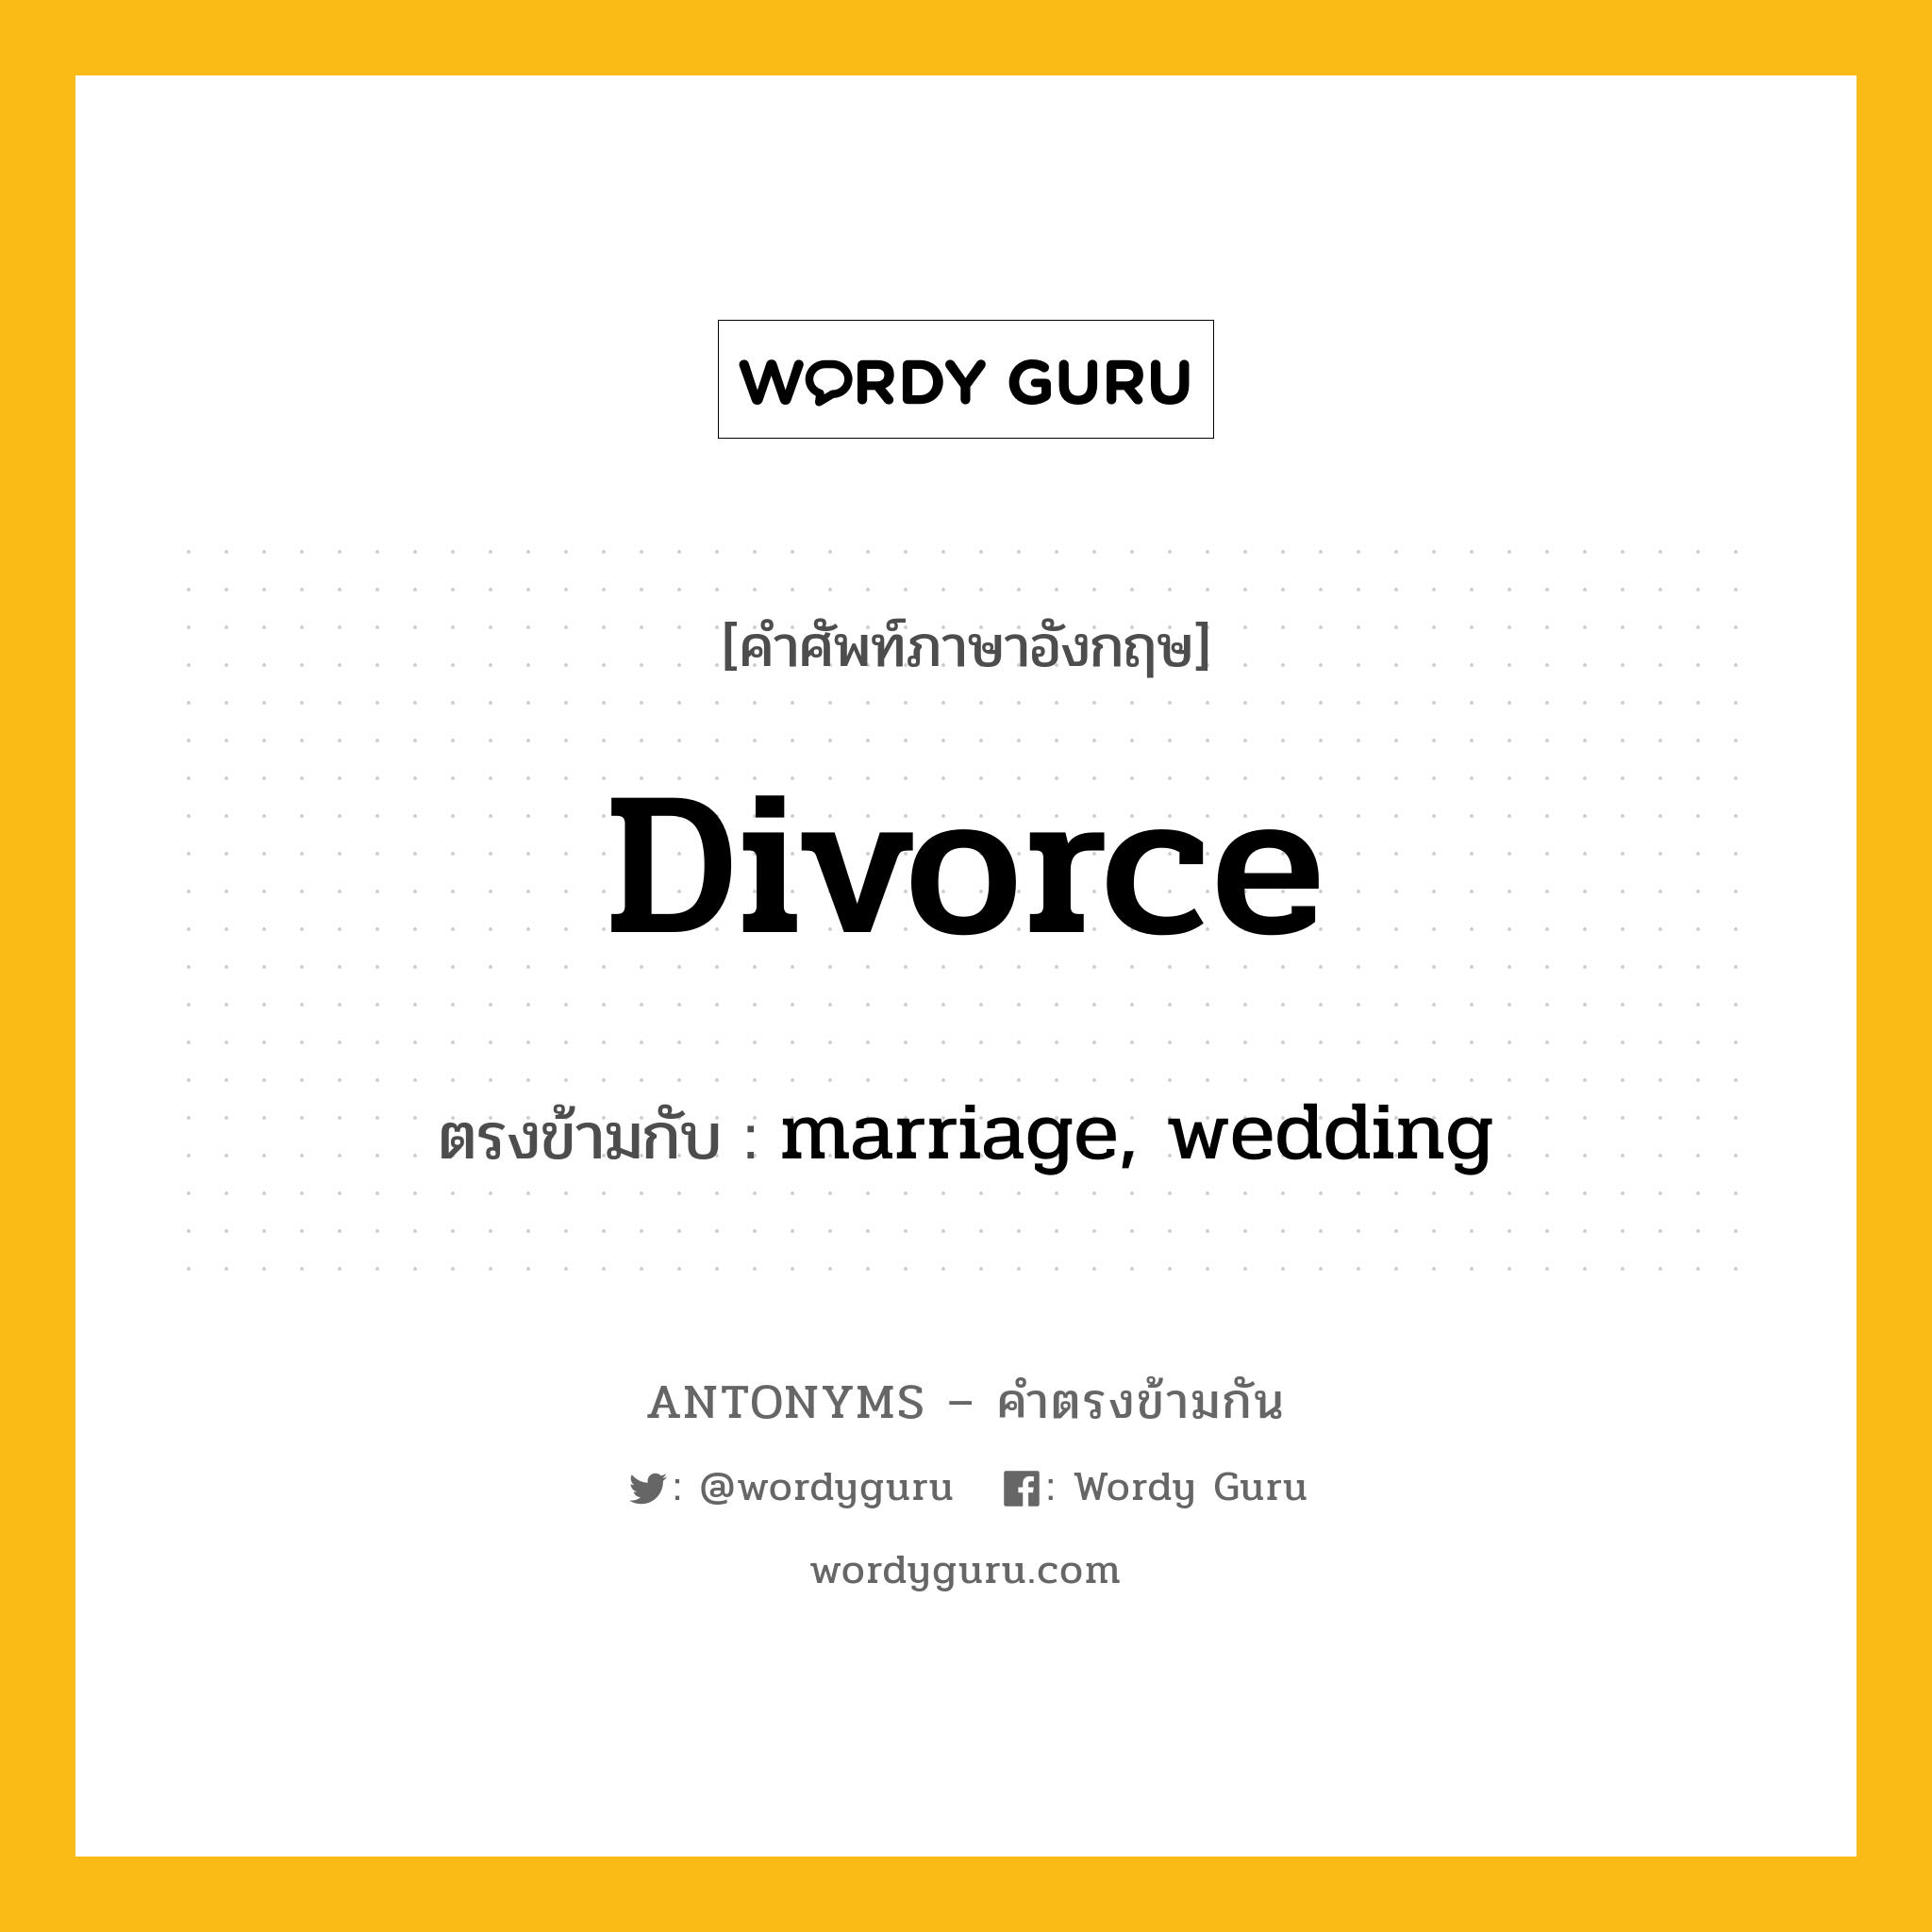 divorce เป็นคำตรงข้ามกับคำไหนบ้าง?, คำศัพท์ภาษาอังกฤษ divorce ตรงข้ามกับ marriage, wedding หมวด marriage, wedding